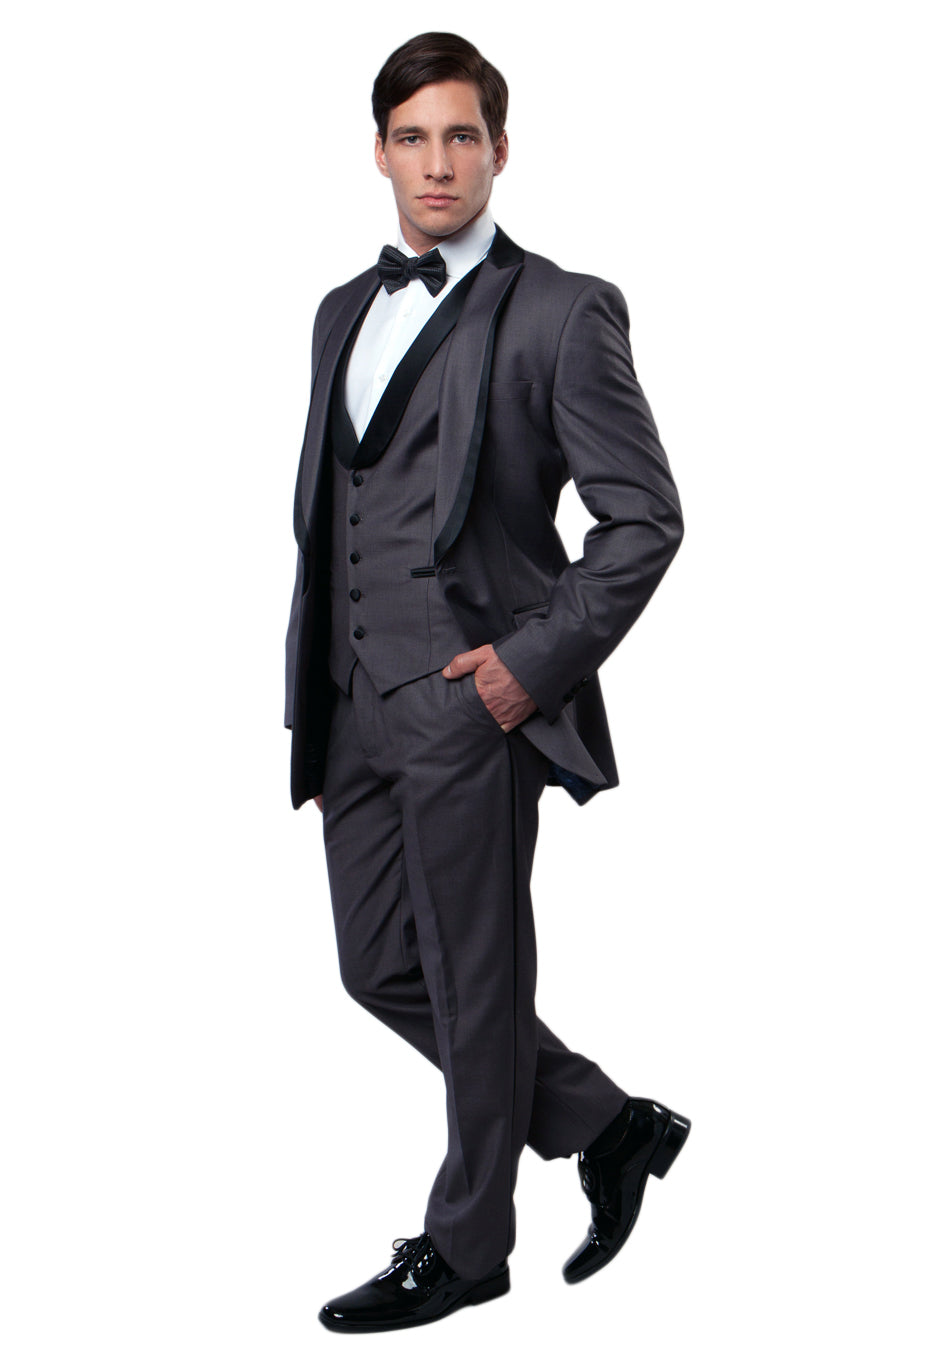 Black / Black Satin Bryan Michaels Shawl Collar Trim/ Peak Lapel Tuxedo Solid Slim Fit Prom Tuxedo For Men MT239S-00 - Hattitude